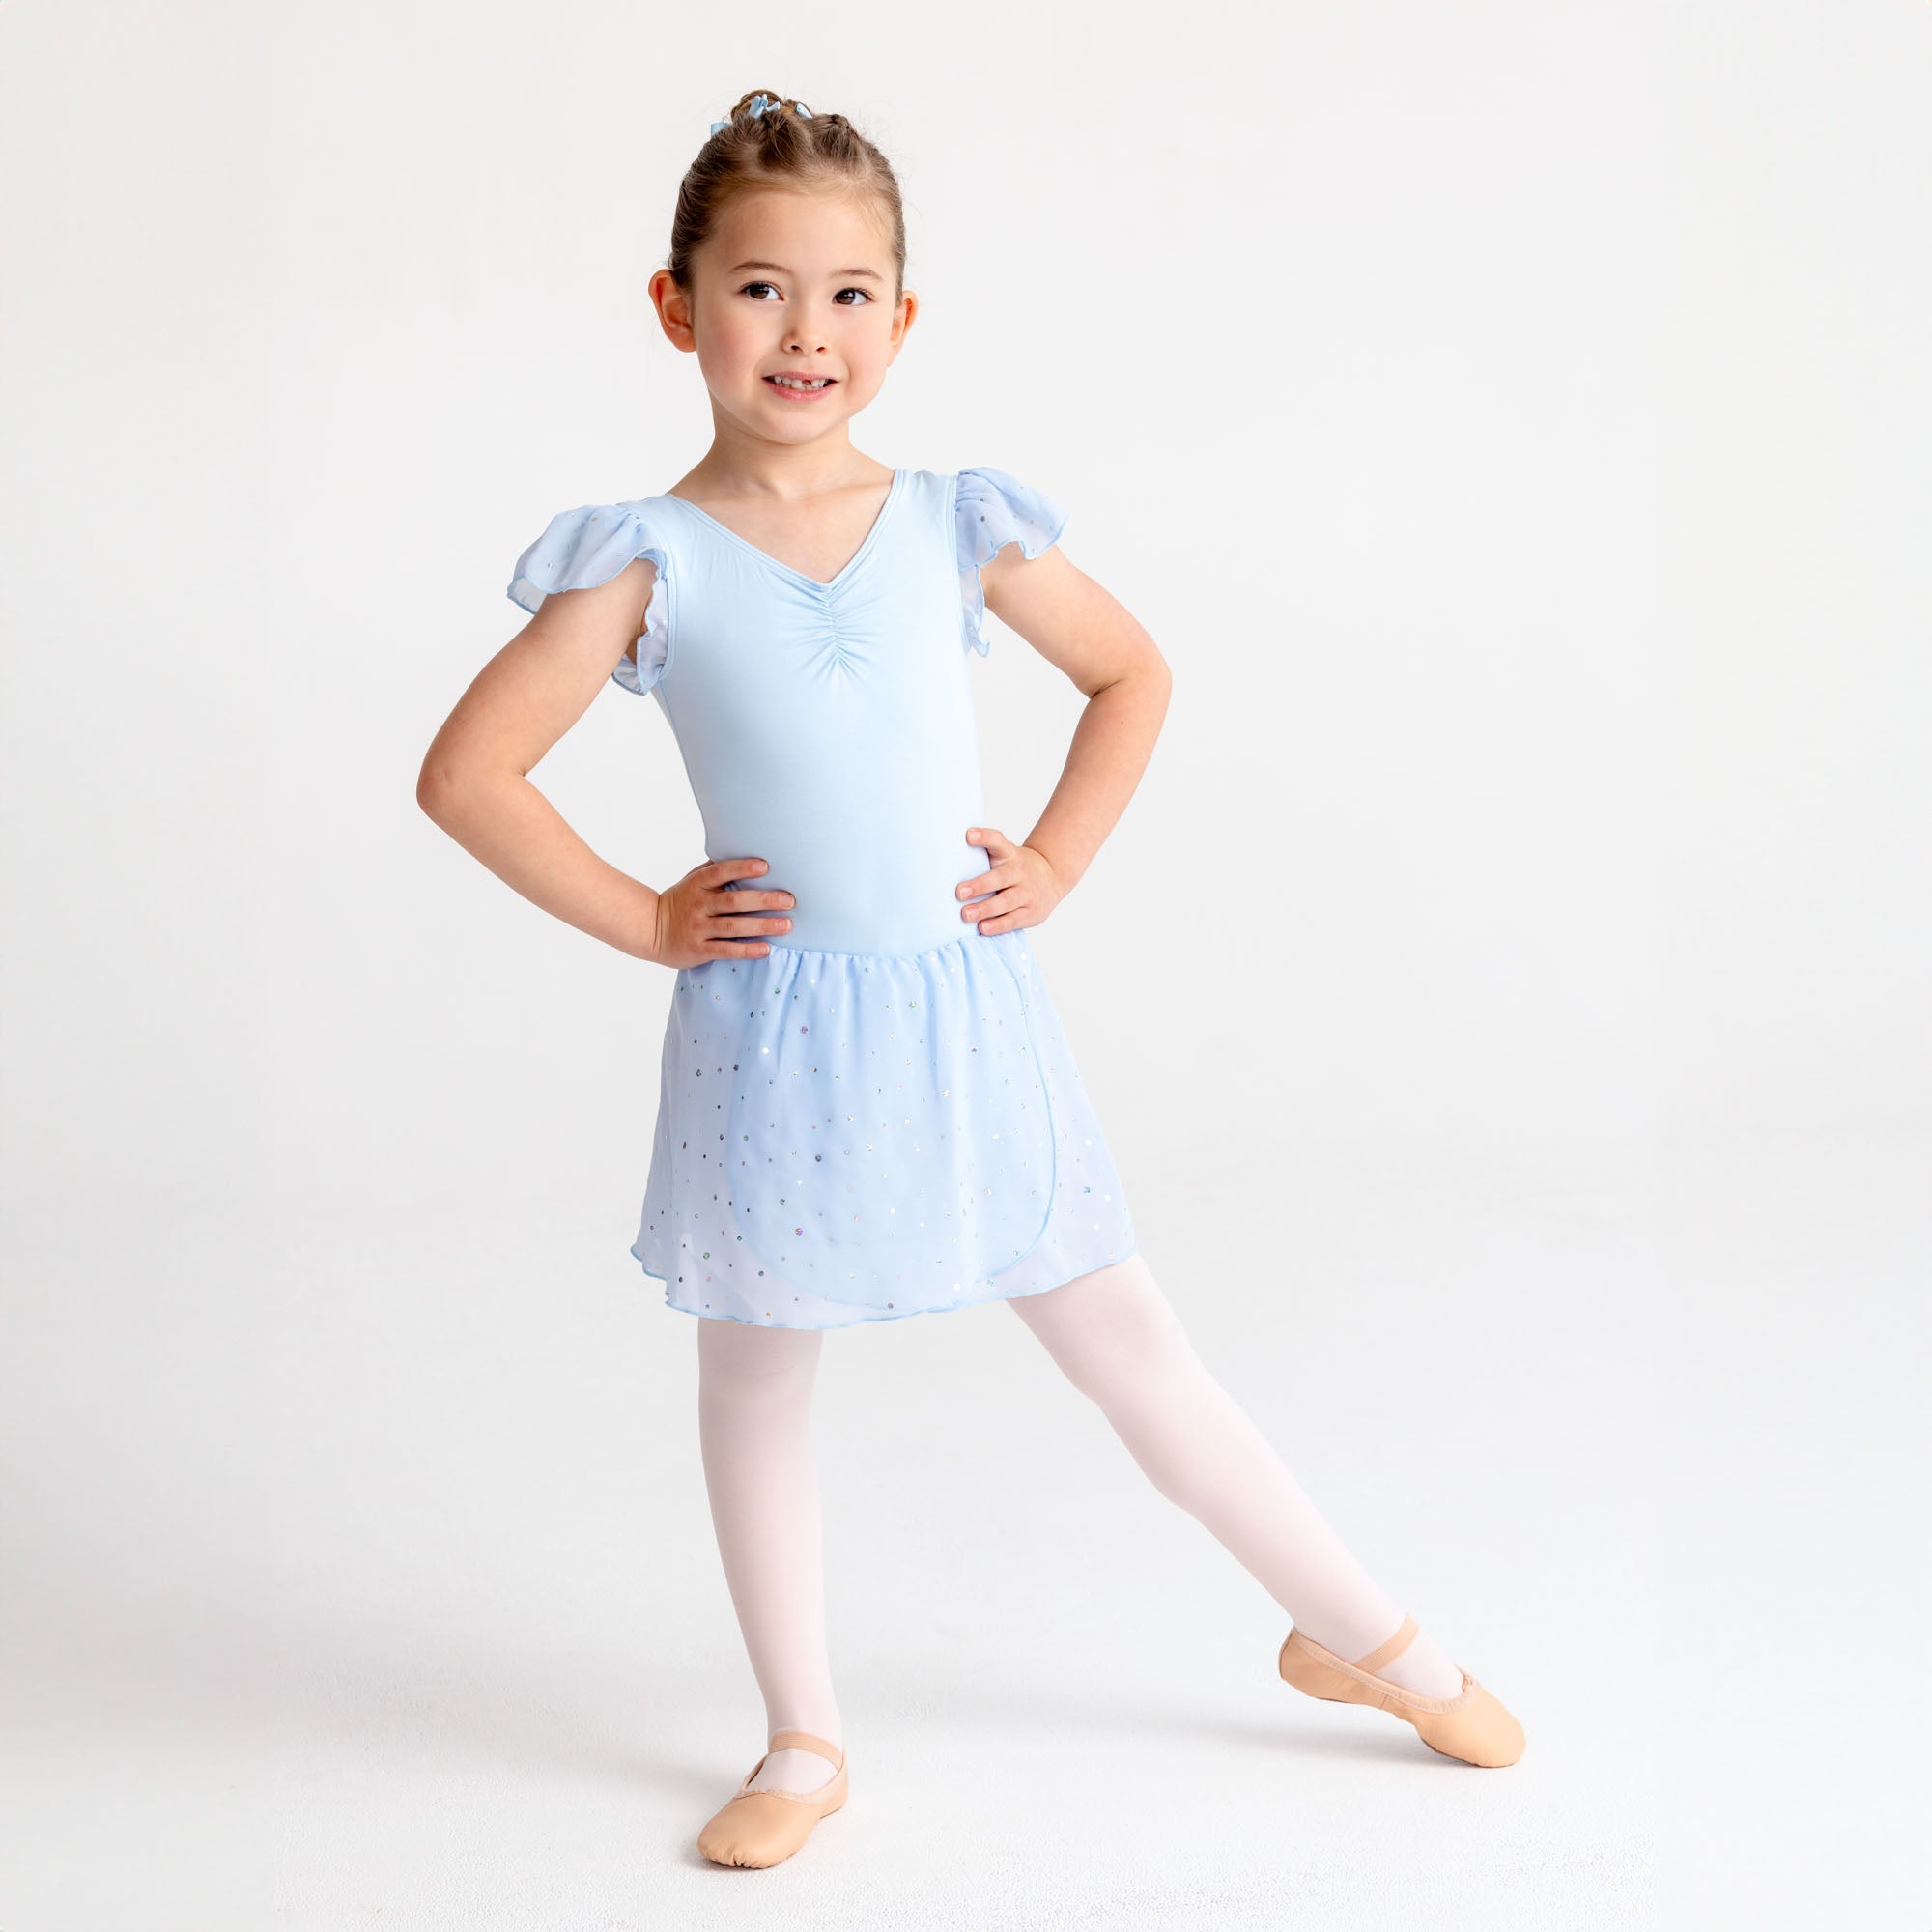 Swdarz Skirt Leggings for Girls Athletic Kids Dance Australia